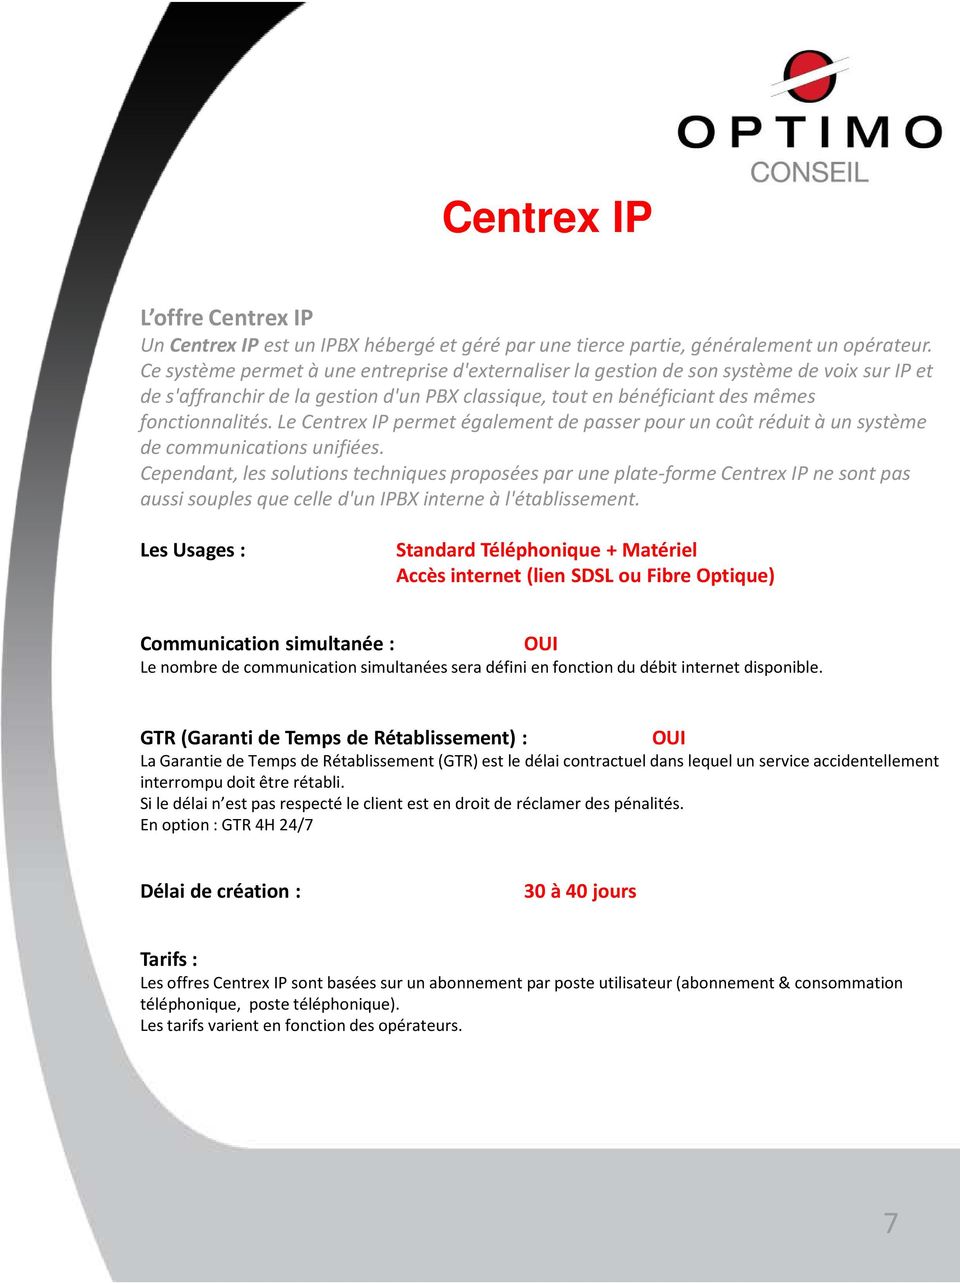 Le Centrex IP permet également de passer pour un coût réduit à un système de communications unifiées.